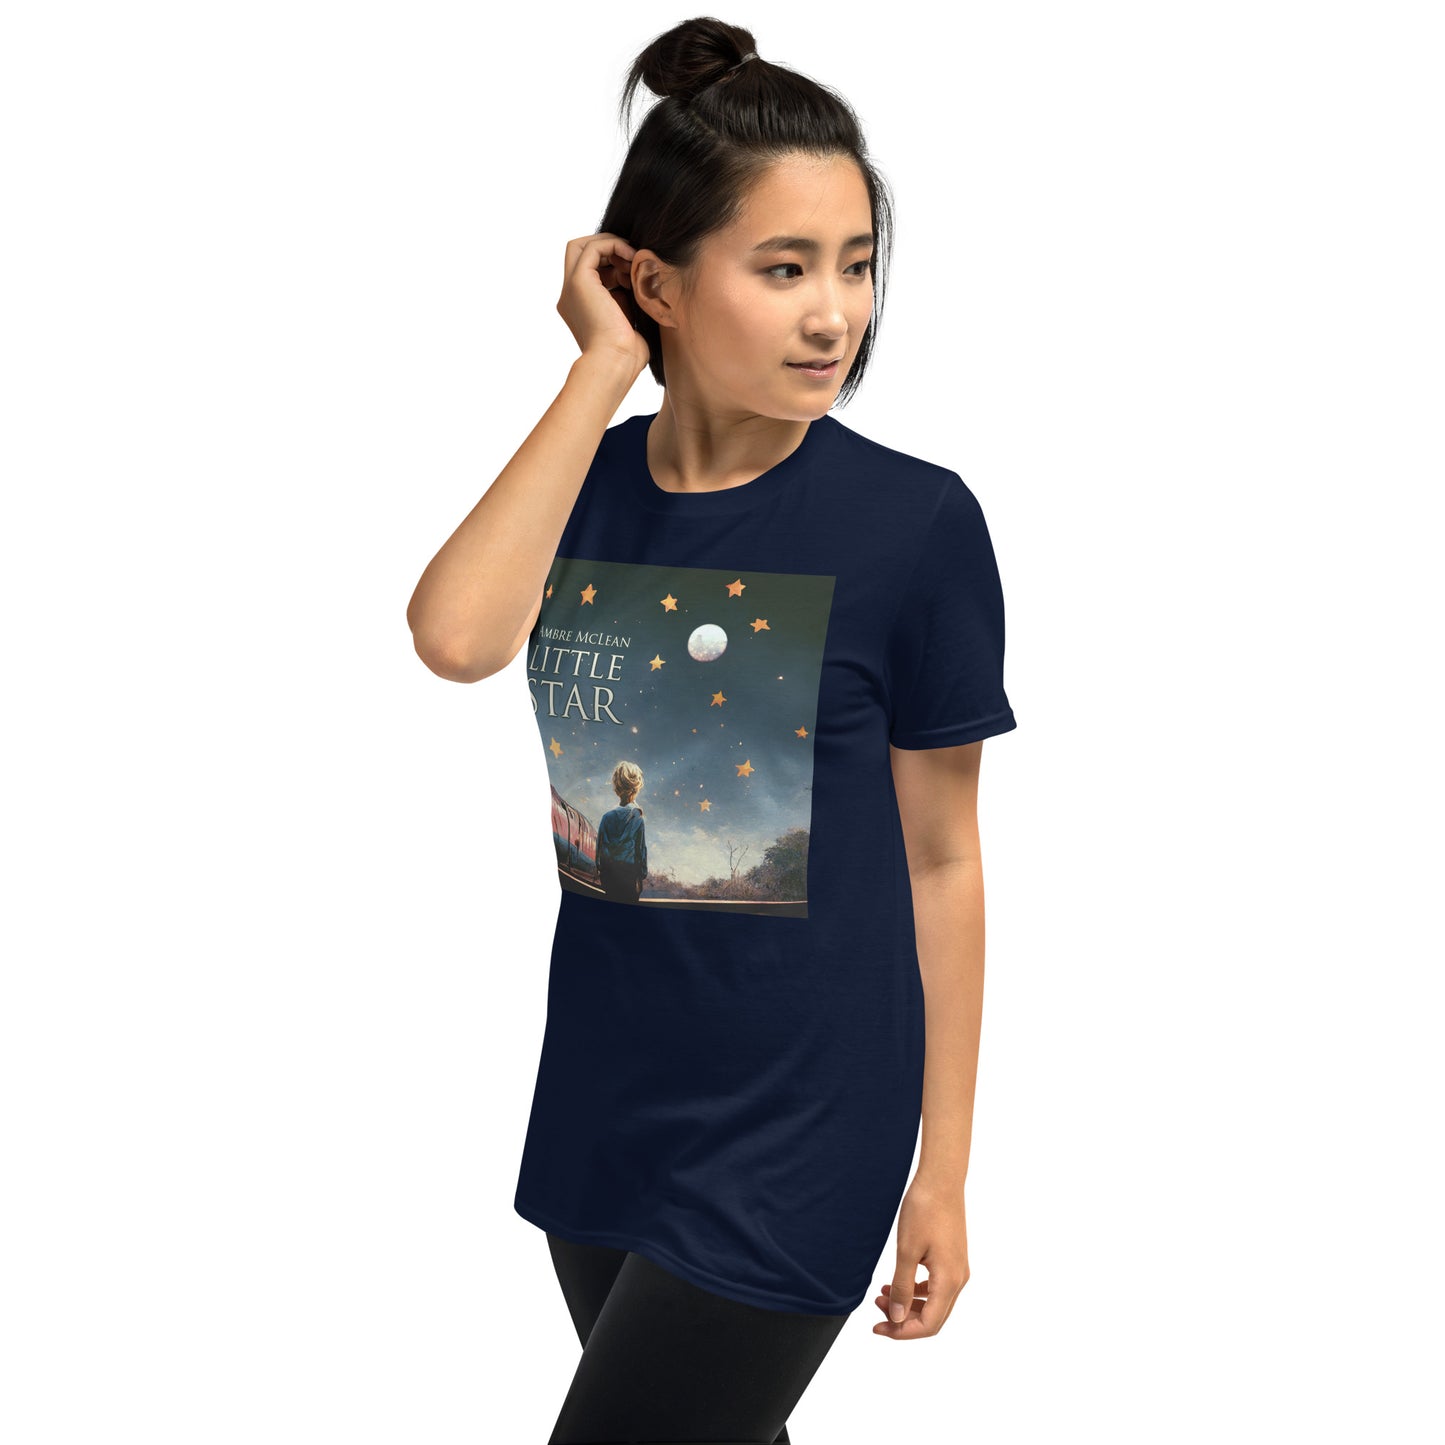 Ambre McLean "Little Star" Short-Sleeve Unisex T-Shirt